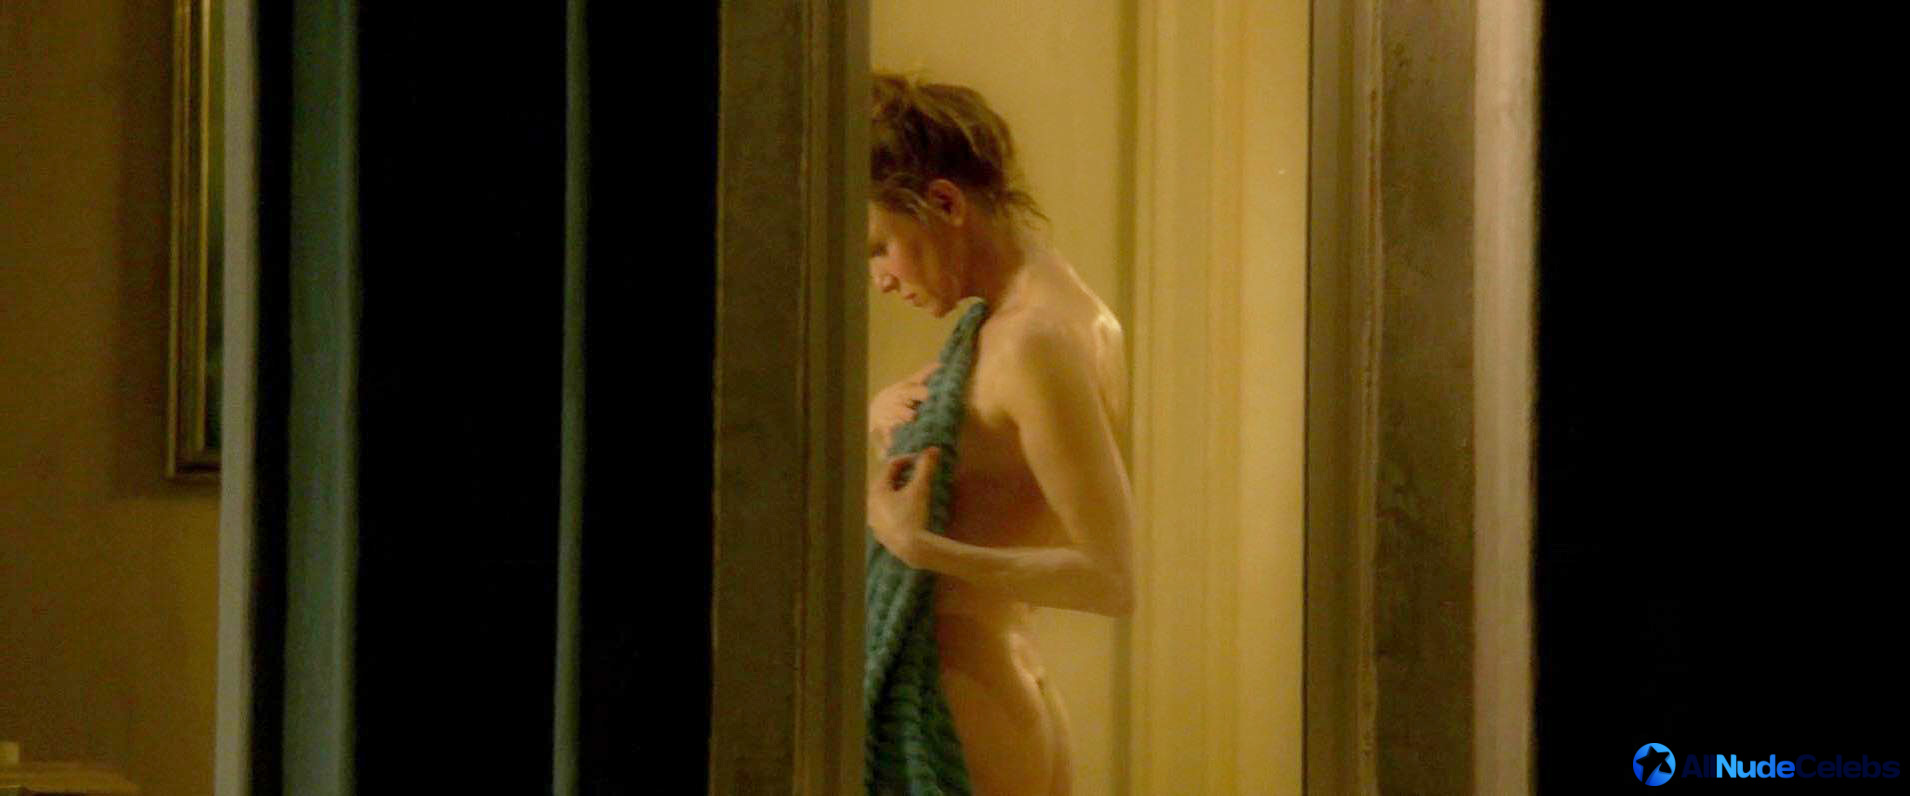 Pictures renee zellweger of naked Renée Zellweger